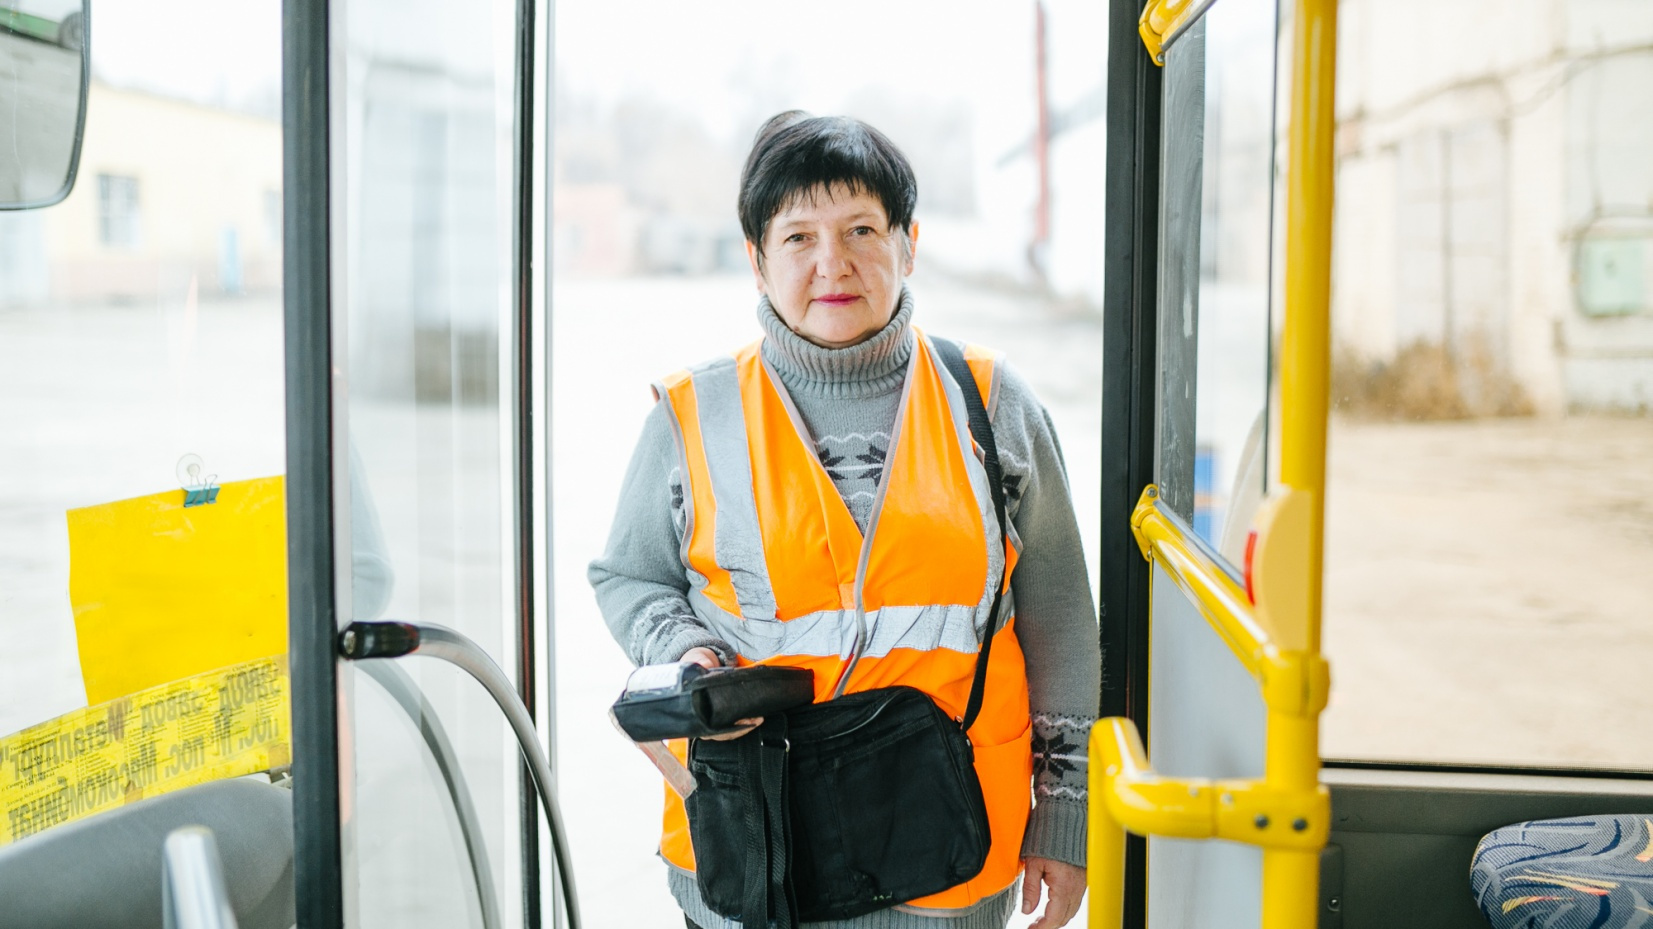 За 20 лет в общественном транспорте работа стала для нее настоящим призванием